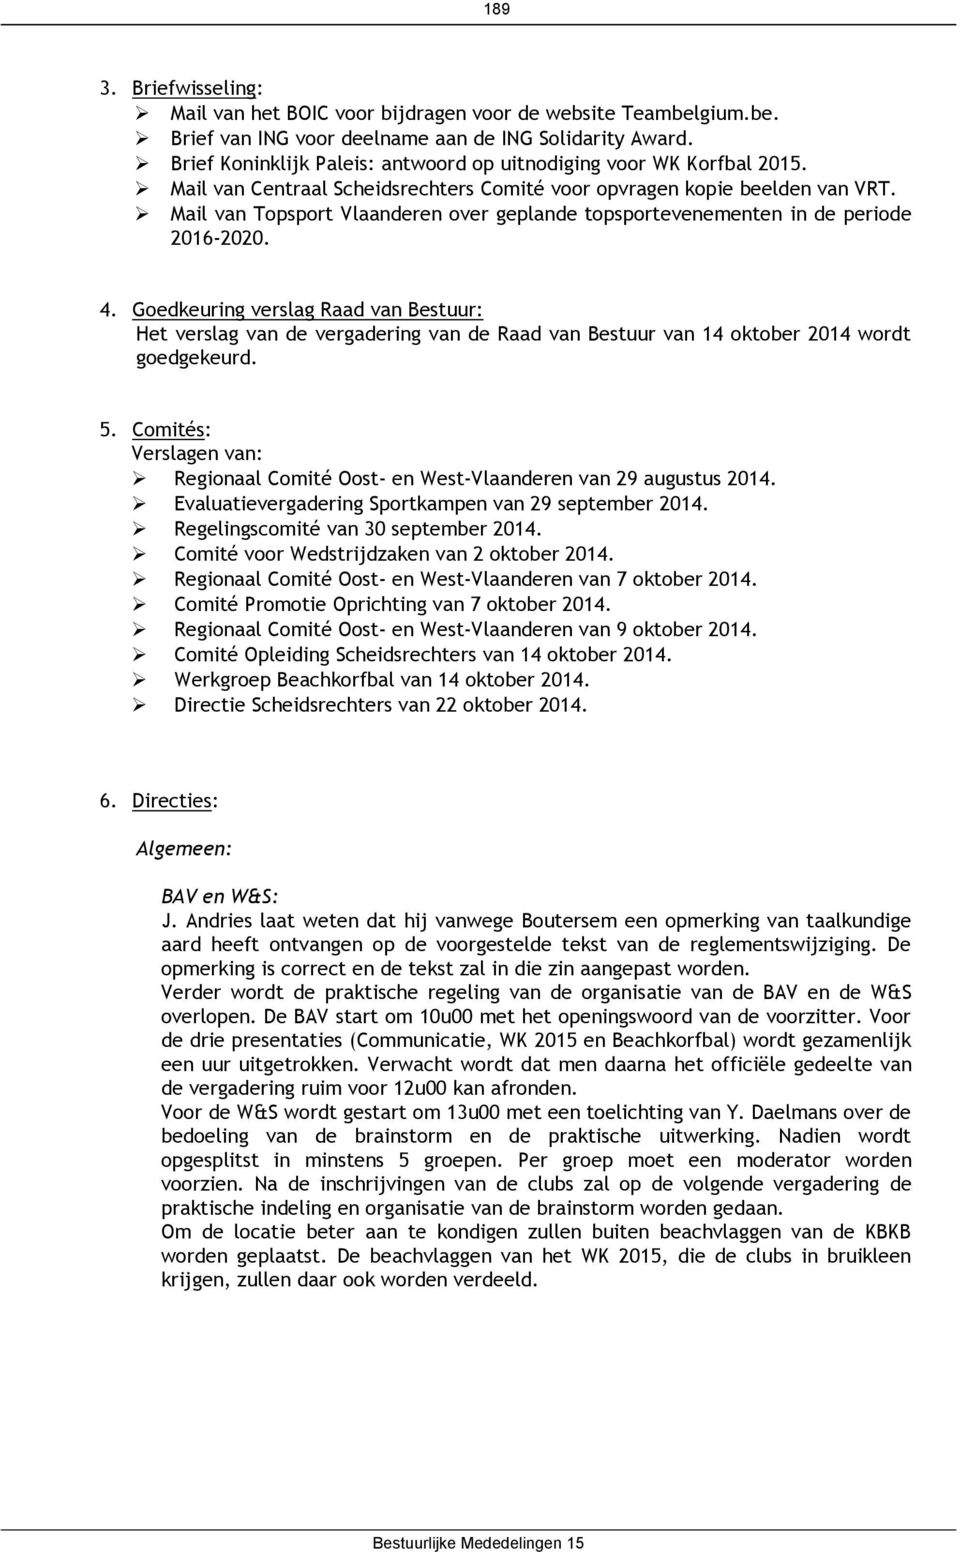 Mail van Topsport Vlaanderen over geplande topsportevenementen in de periode 2016-2020. 4.